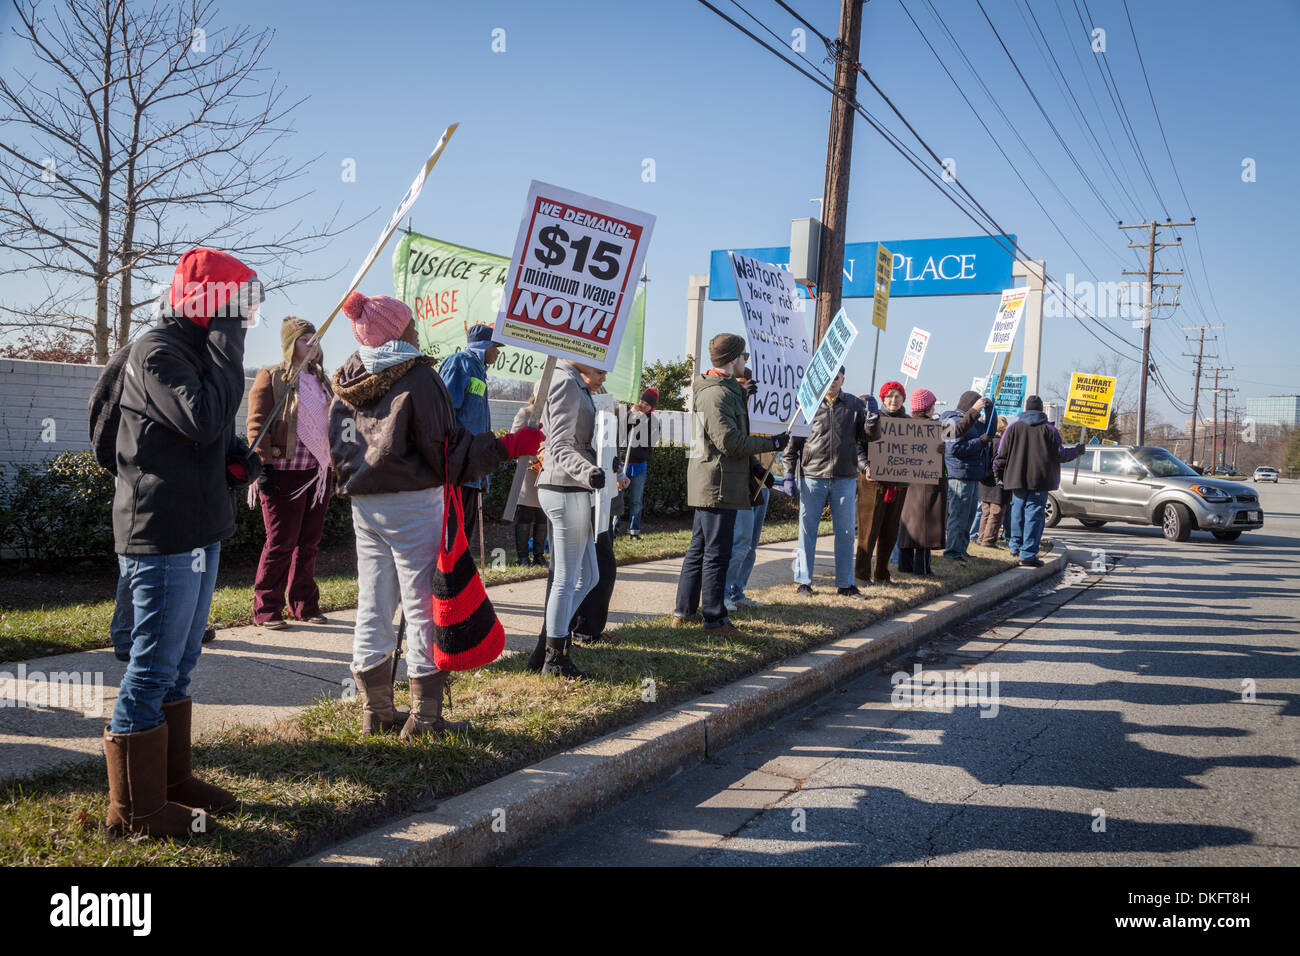 Schwarzer Freitag Anti-Walmart Protest, existenzsichernde Löhne, Towson, Maryland, Baltimore County zu unterstützen. Stockfoto